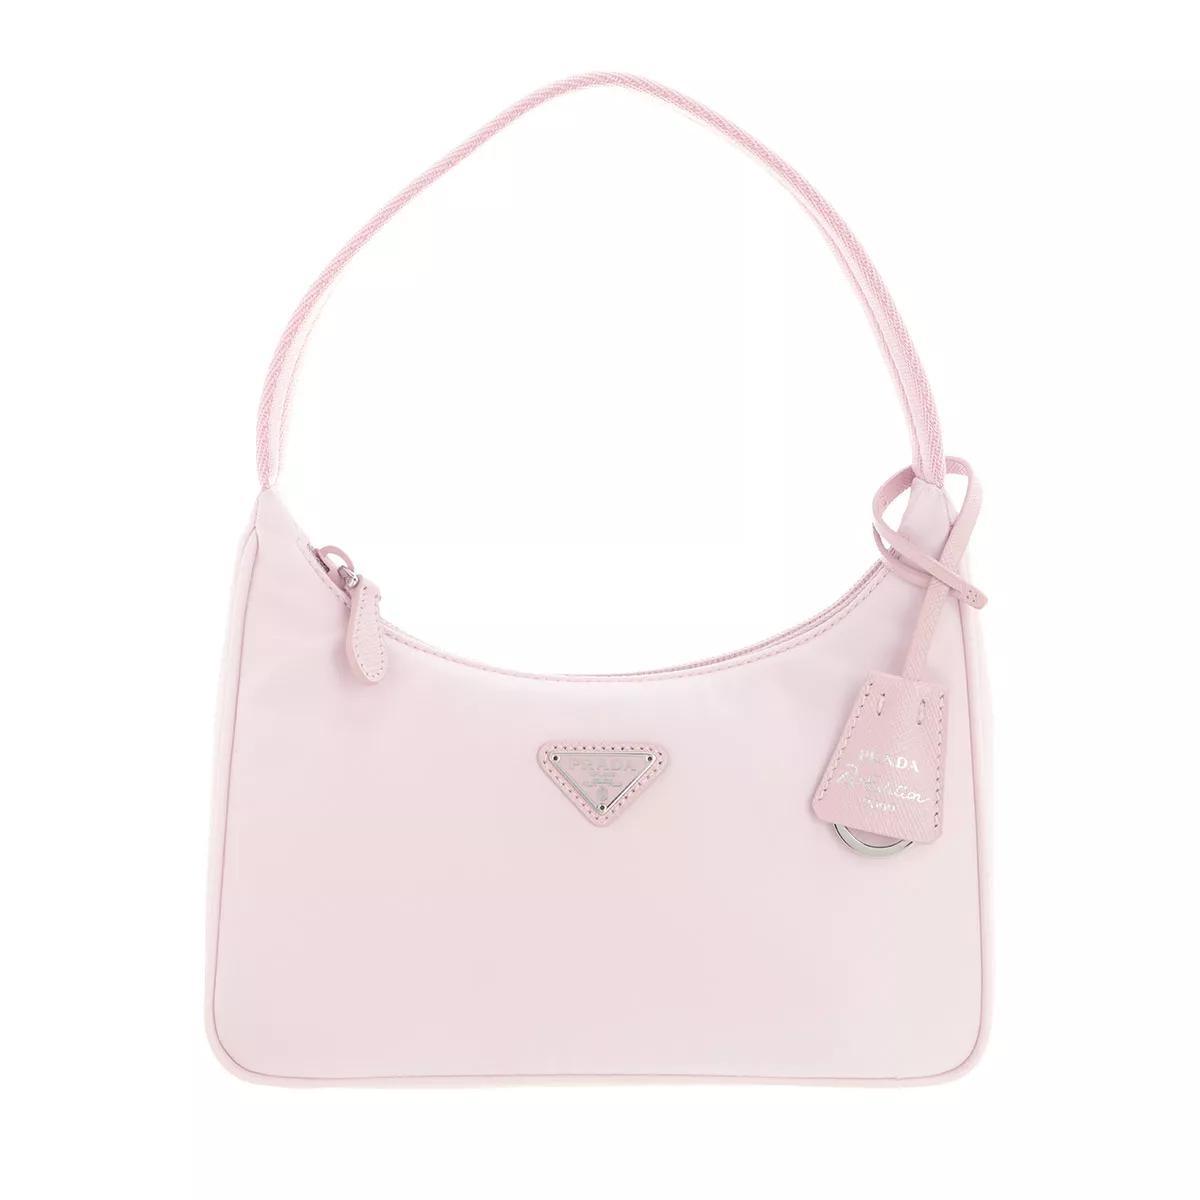 Prada Re-Edition 2005 Re-Nylon Bag Alabaster Pink